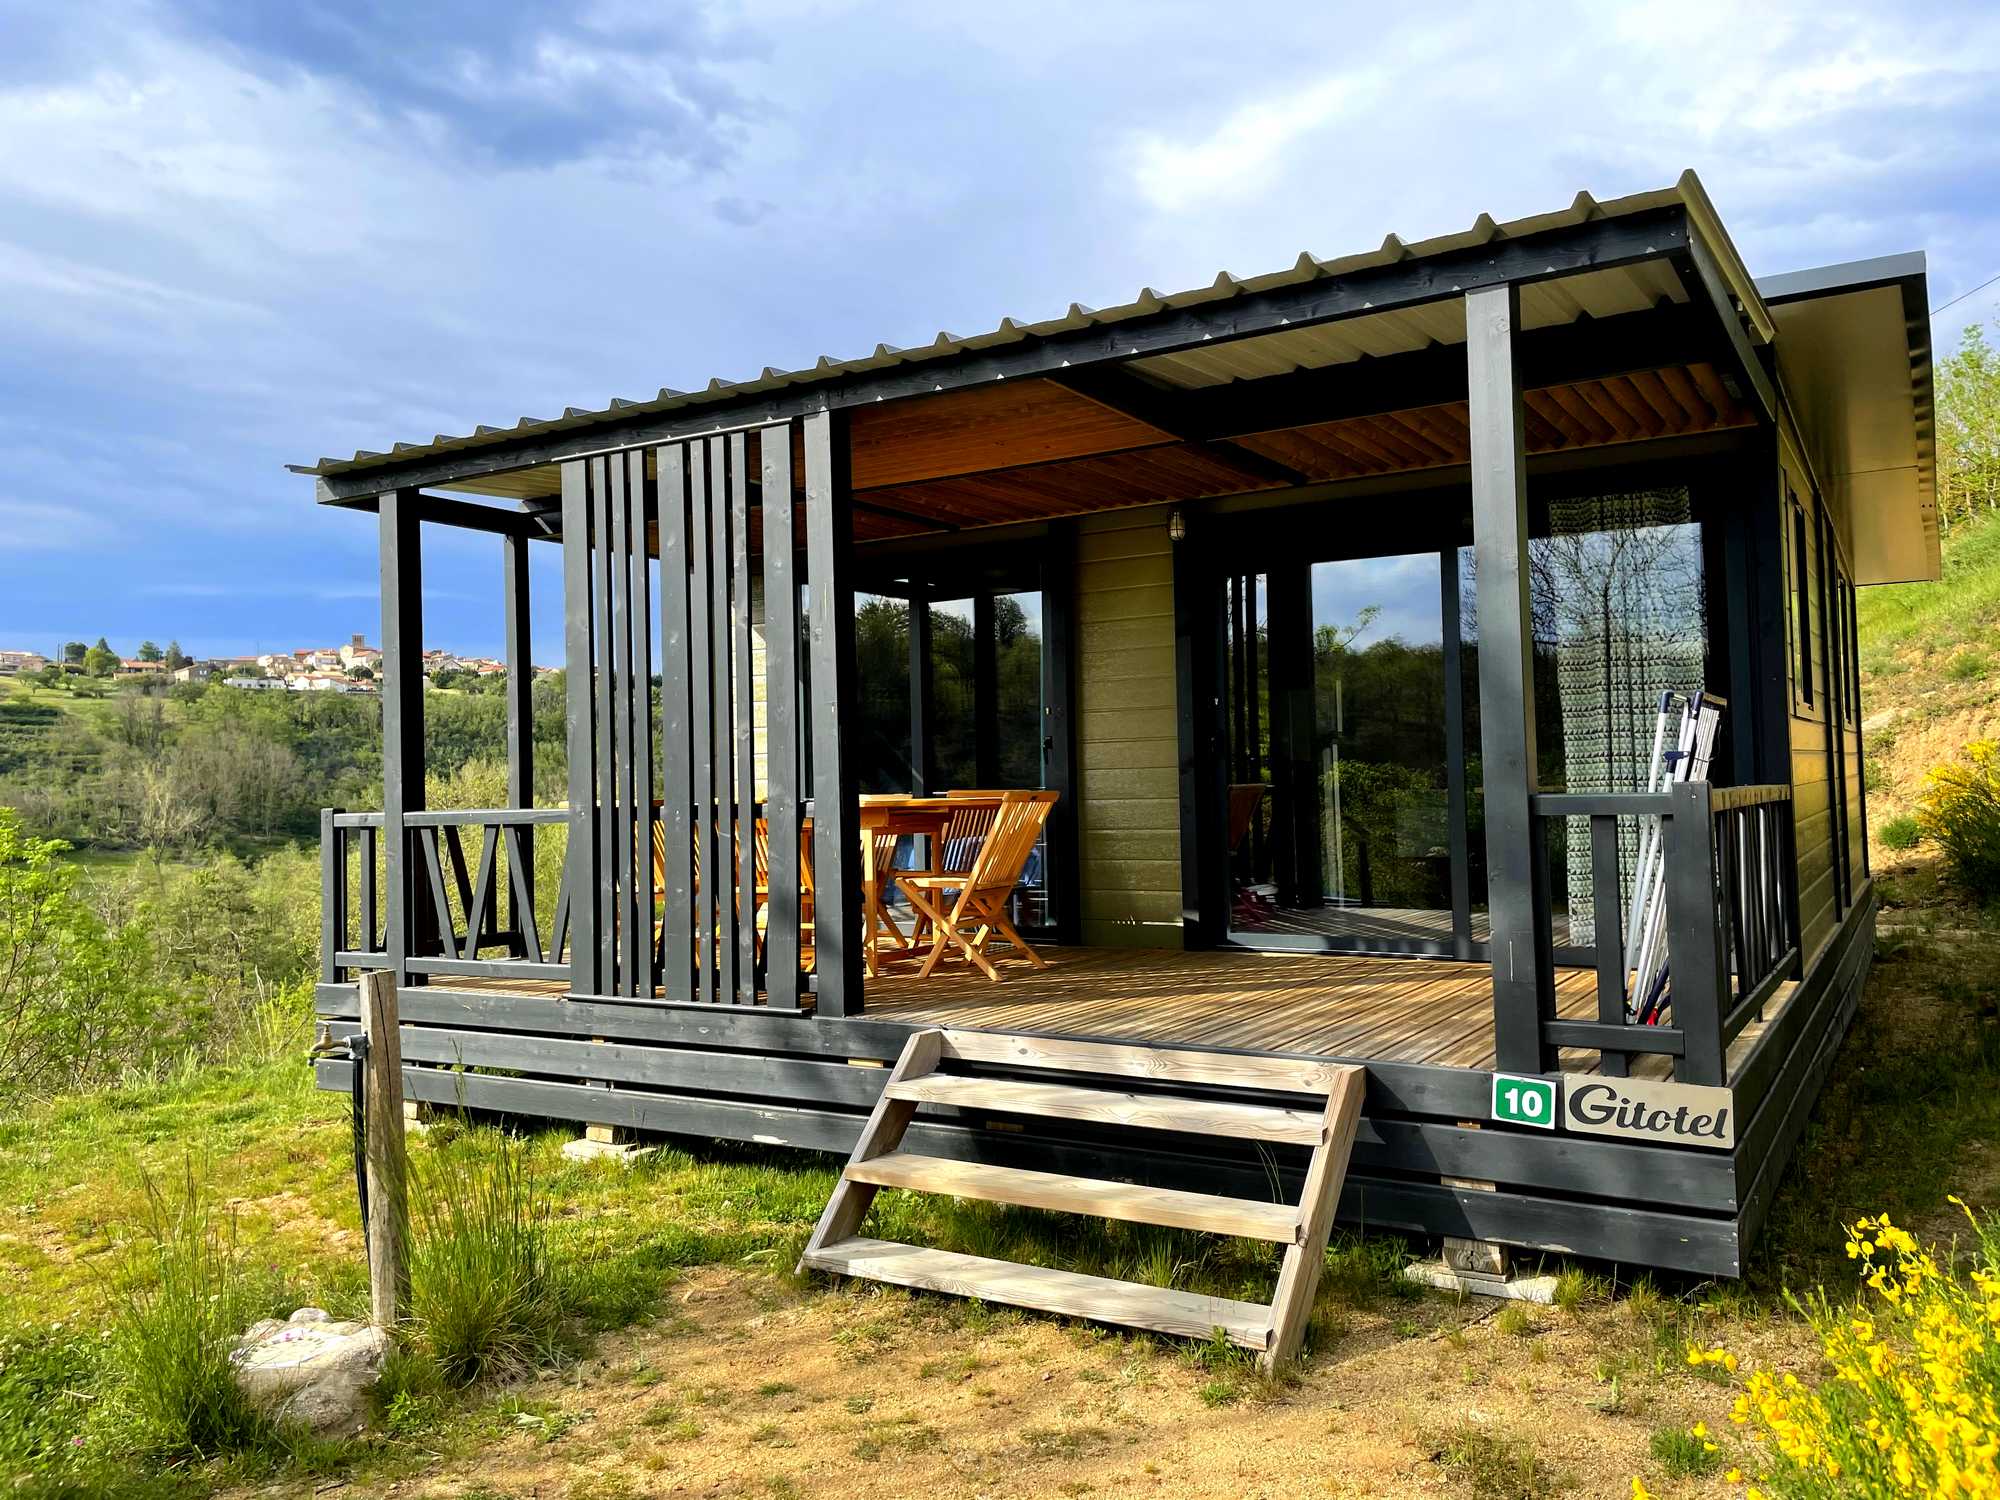 Location - Chalet Grand Panoramic 3 Chambres- 33M2, Terrasse Couverte De 14M2 Nouveauté 2020 - Camping Sites et Paysages L'Oasis